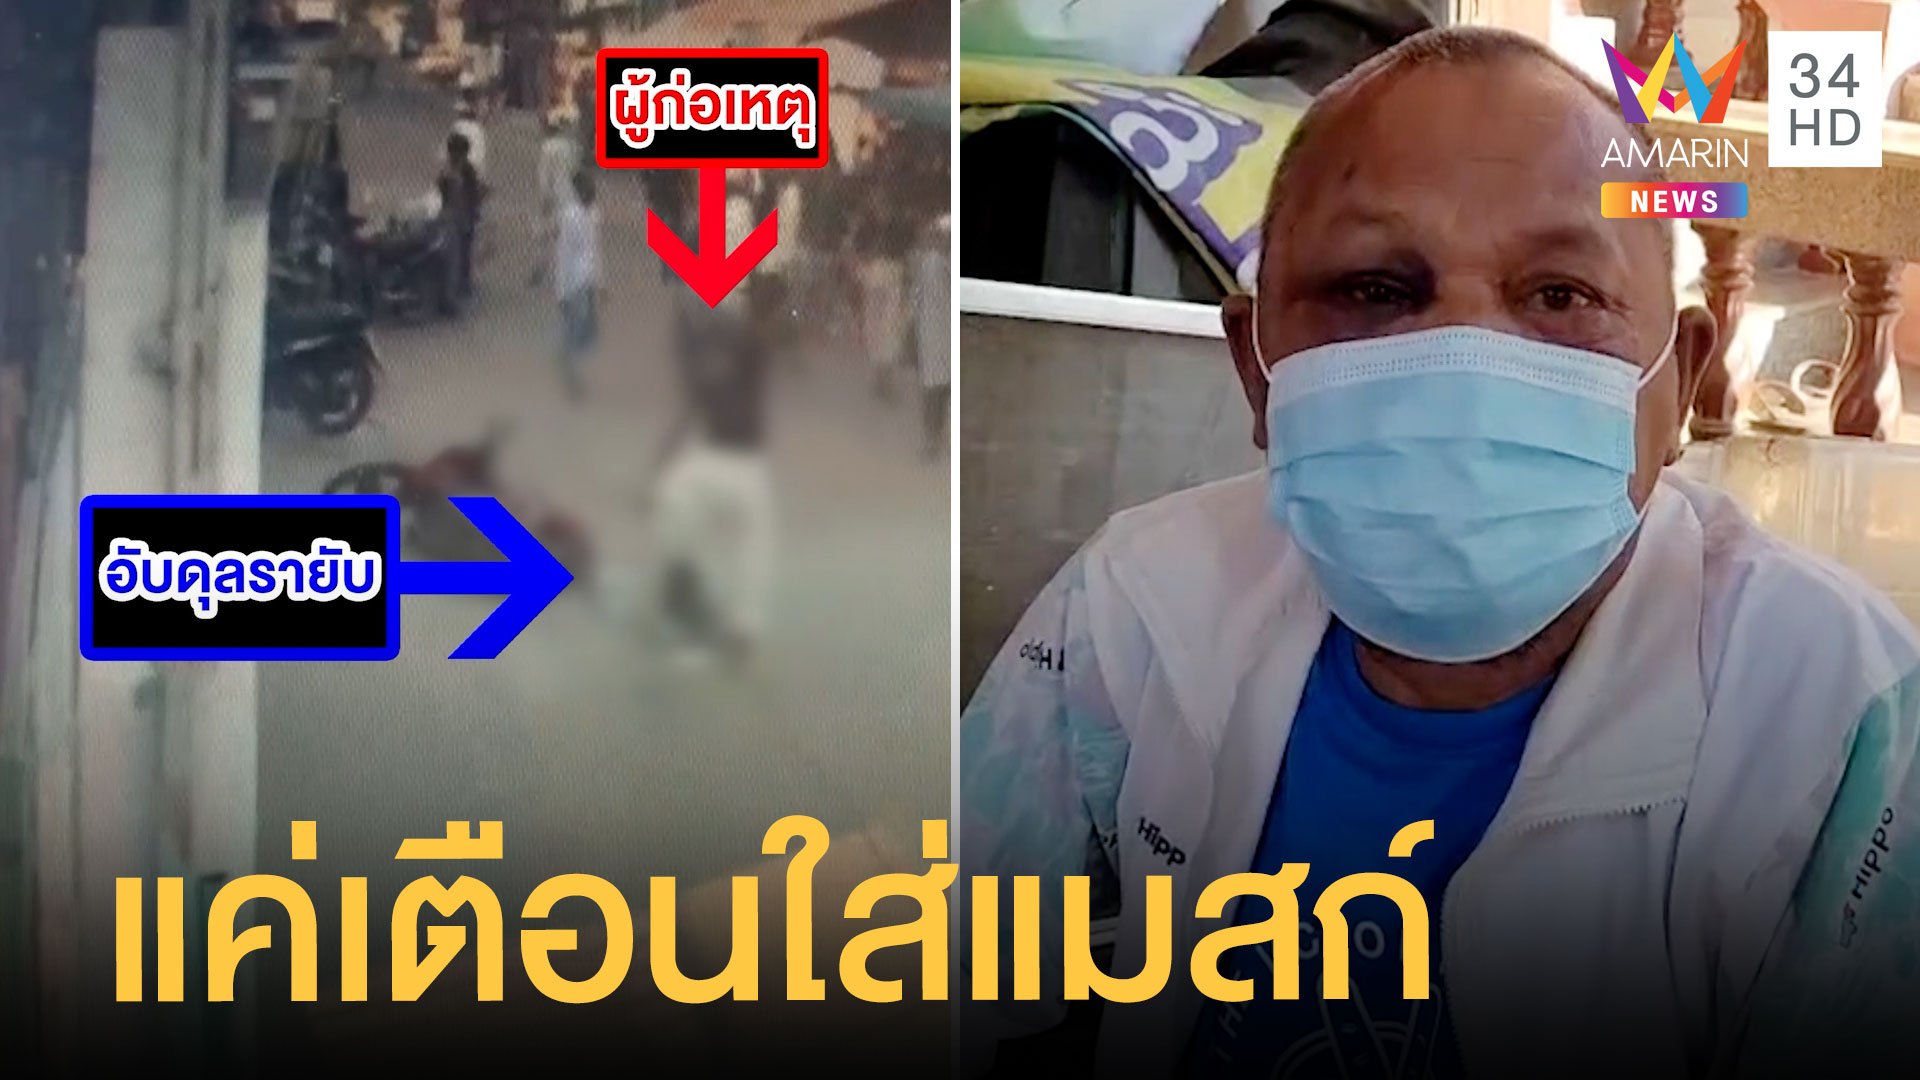 หนุ่มพม่าโดนเตือนให้ใส่หน้ากากอนามัย ดักกระทืบจนสลบ | ข่าวอรุณอมรินทร์ | 10 ธ.ค. 63 | AMARIN TVHD34